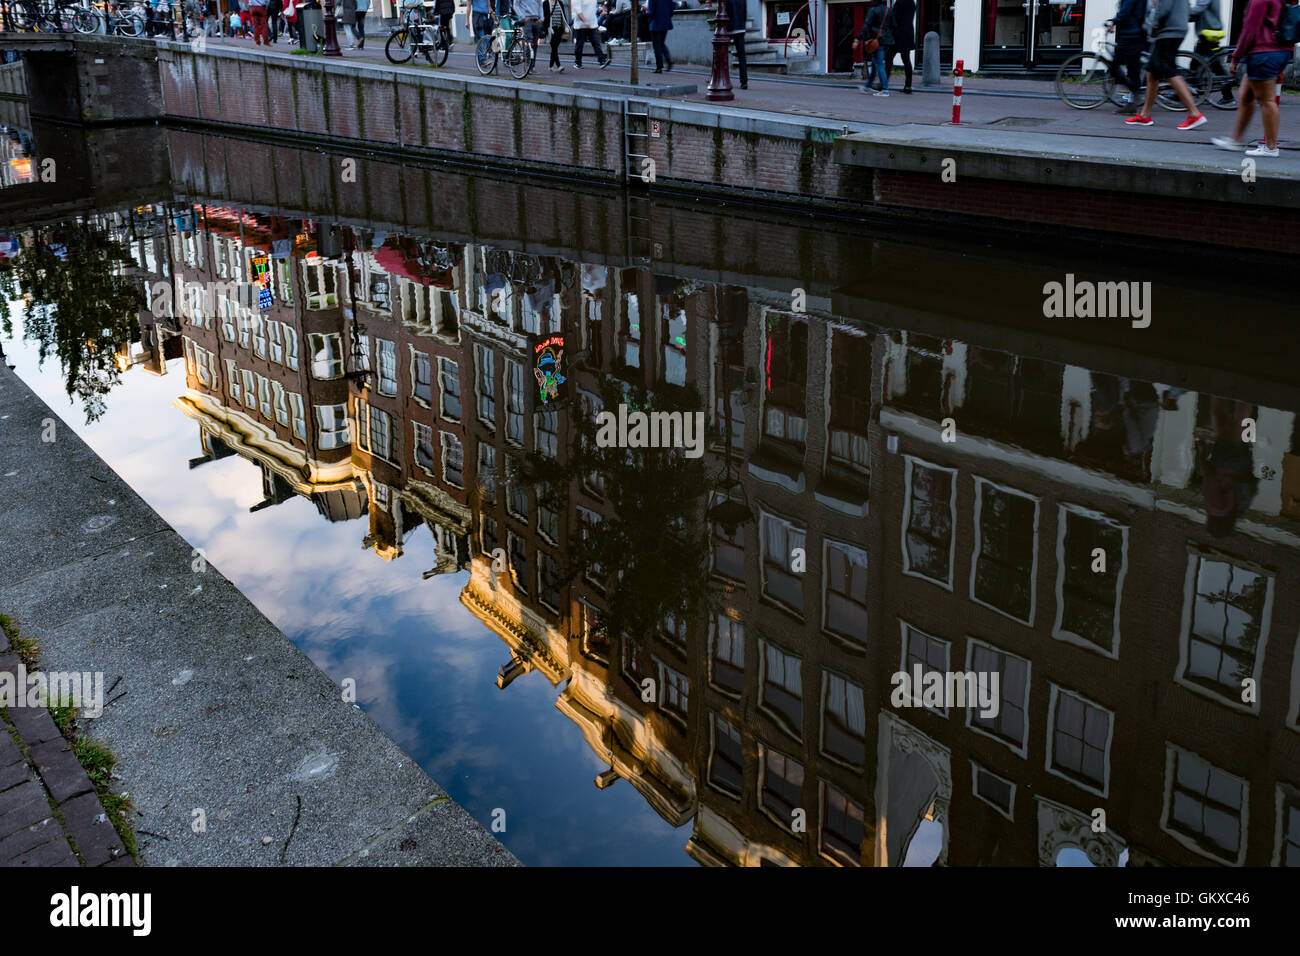 Riflessioni nel canale del quartiere a luci rosse di Amsterdam, Paesi Bassi Foto Stock